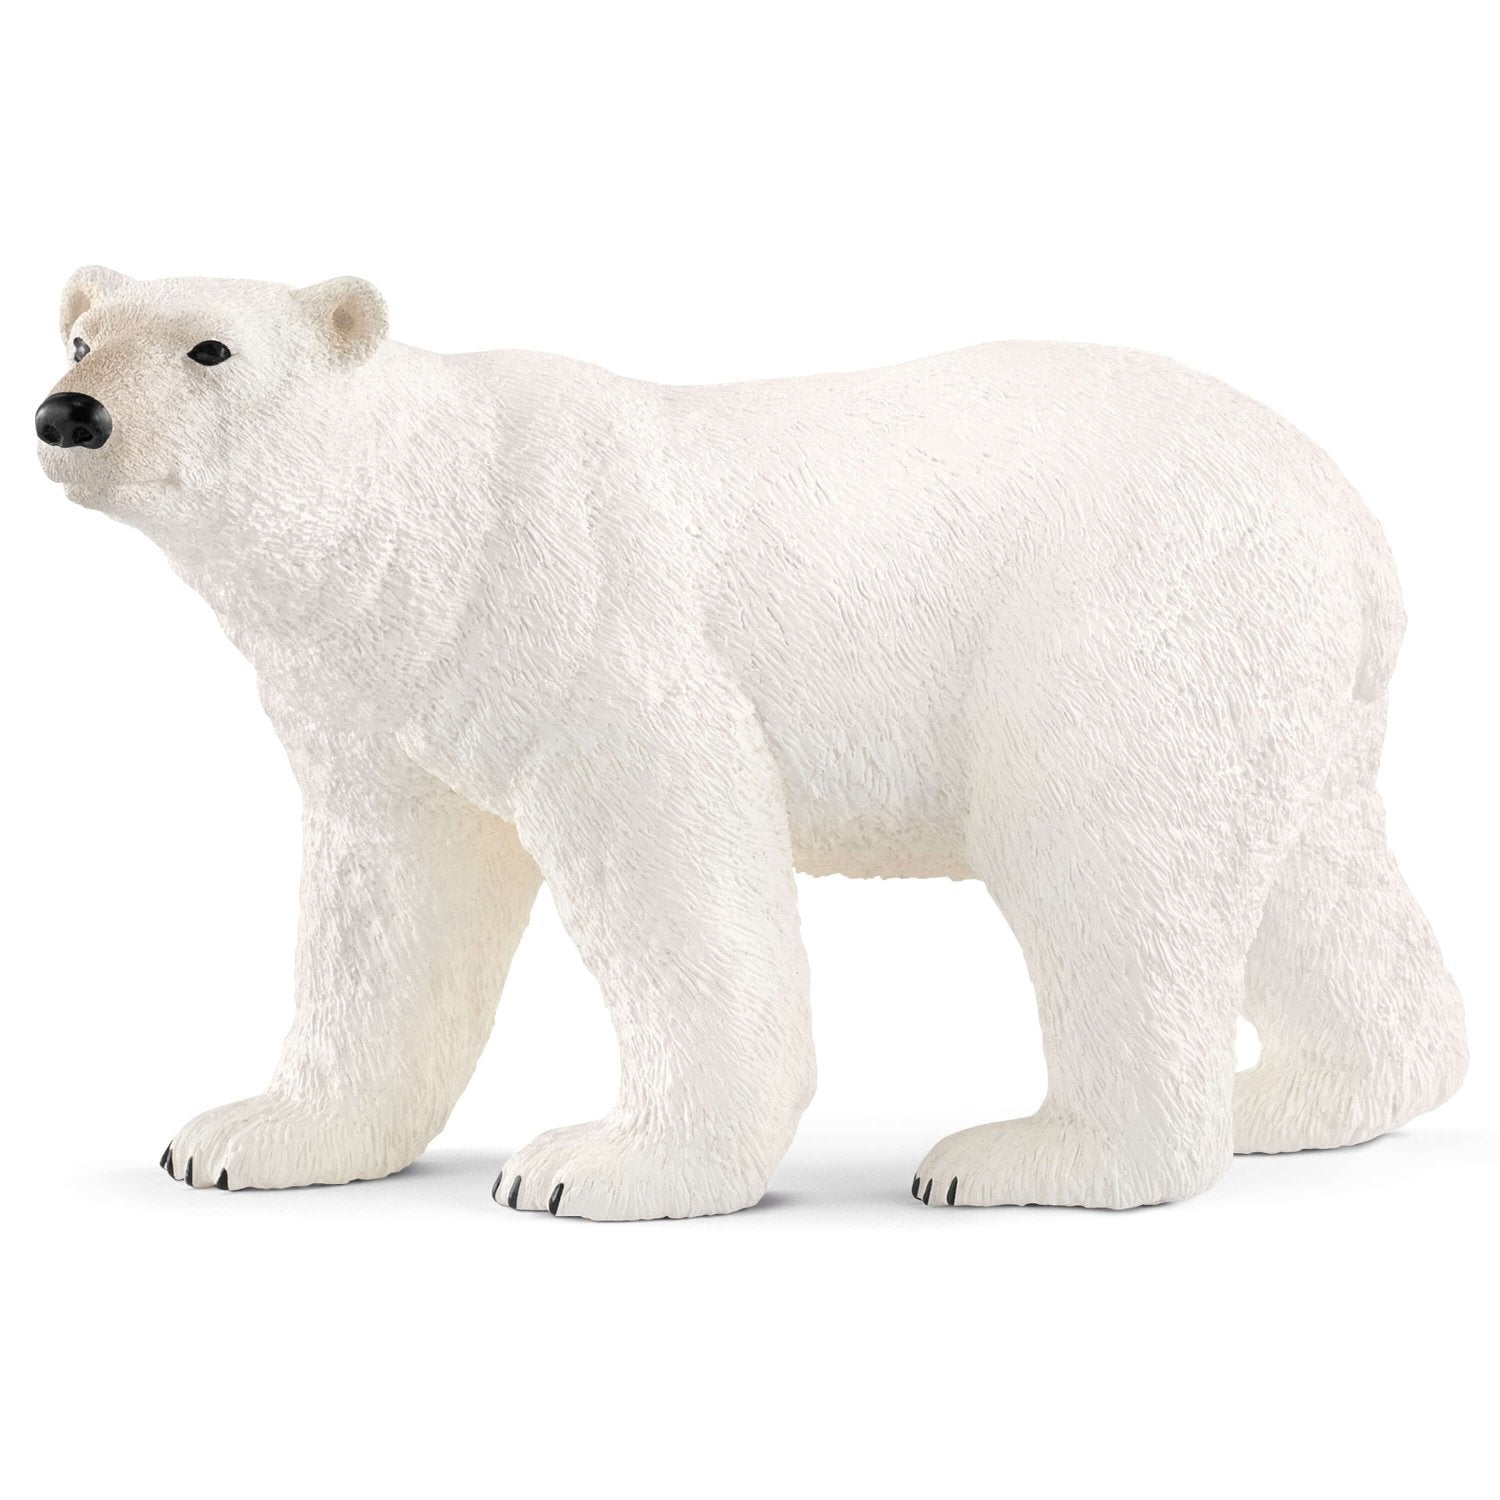 polar animal figures